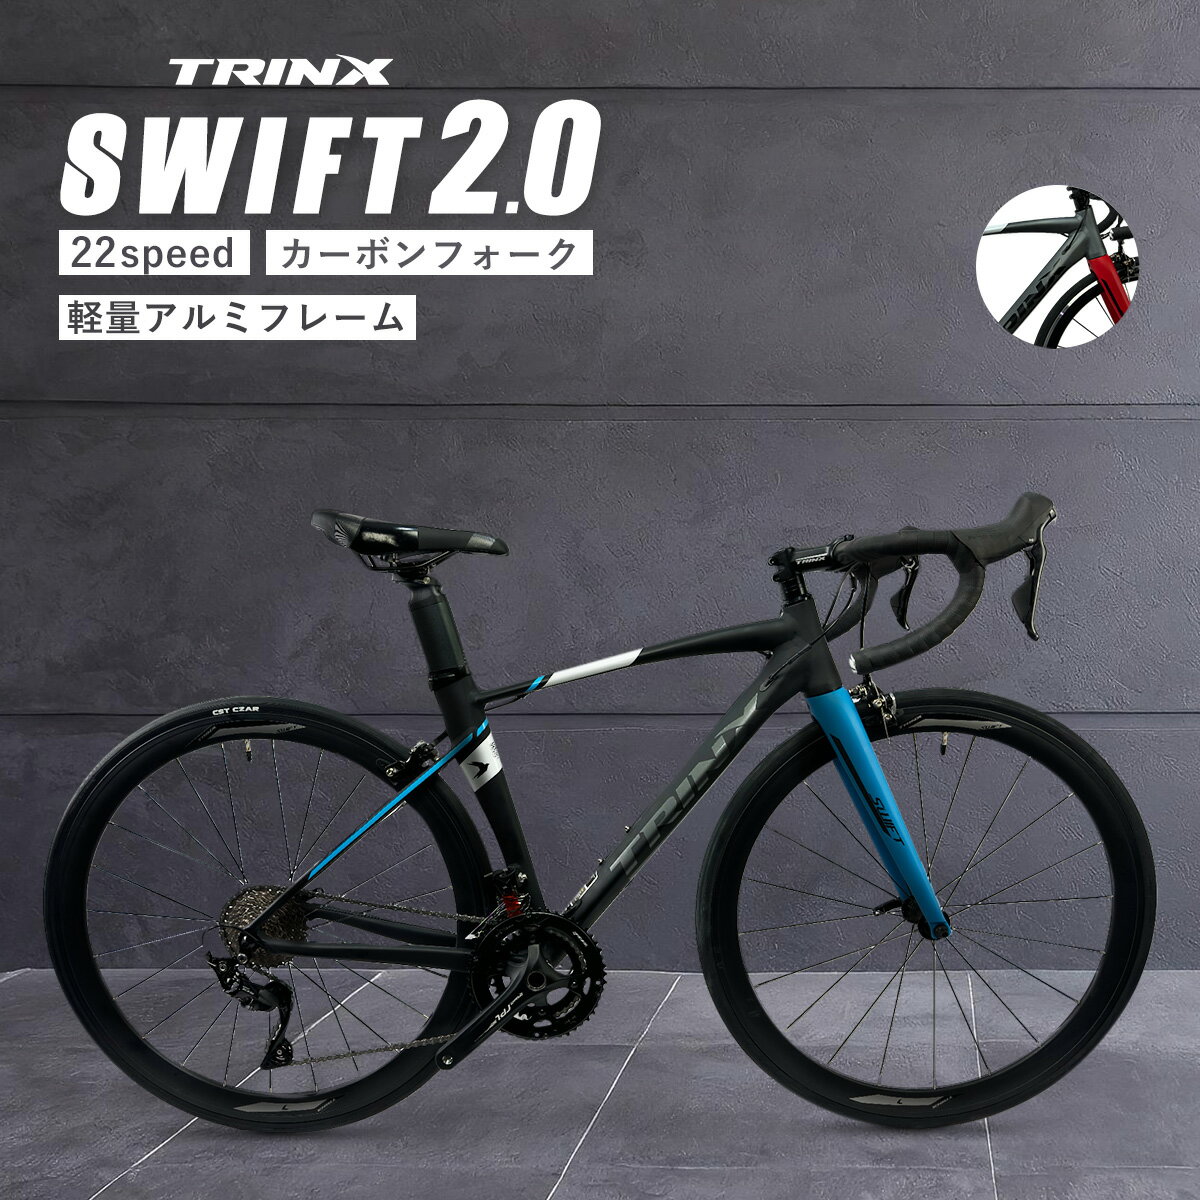 【新しくなった本格派ロードSWIFT 1.0】TRINXのロードバイク SWIFT 700C カーボン&アルミフレーム人気モデルの最新型シマノ TIAGRA 20段変速ロードレーサー